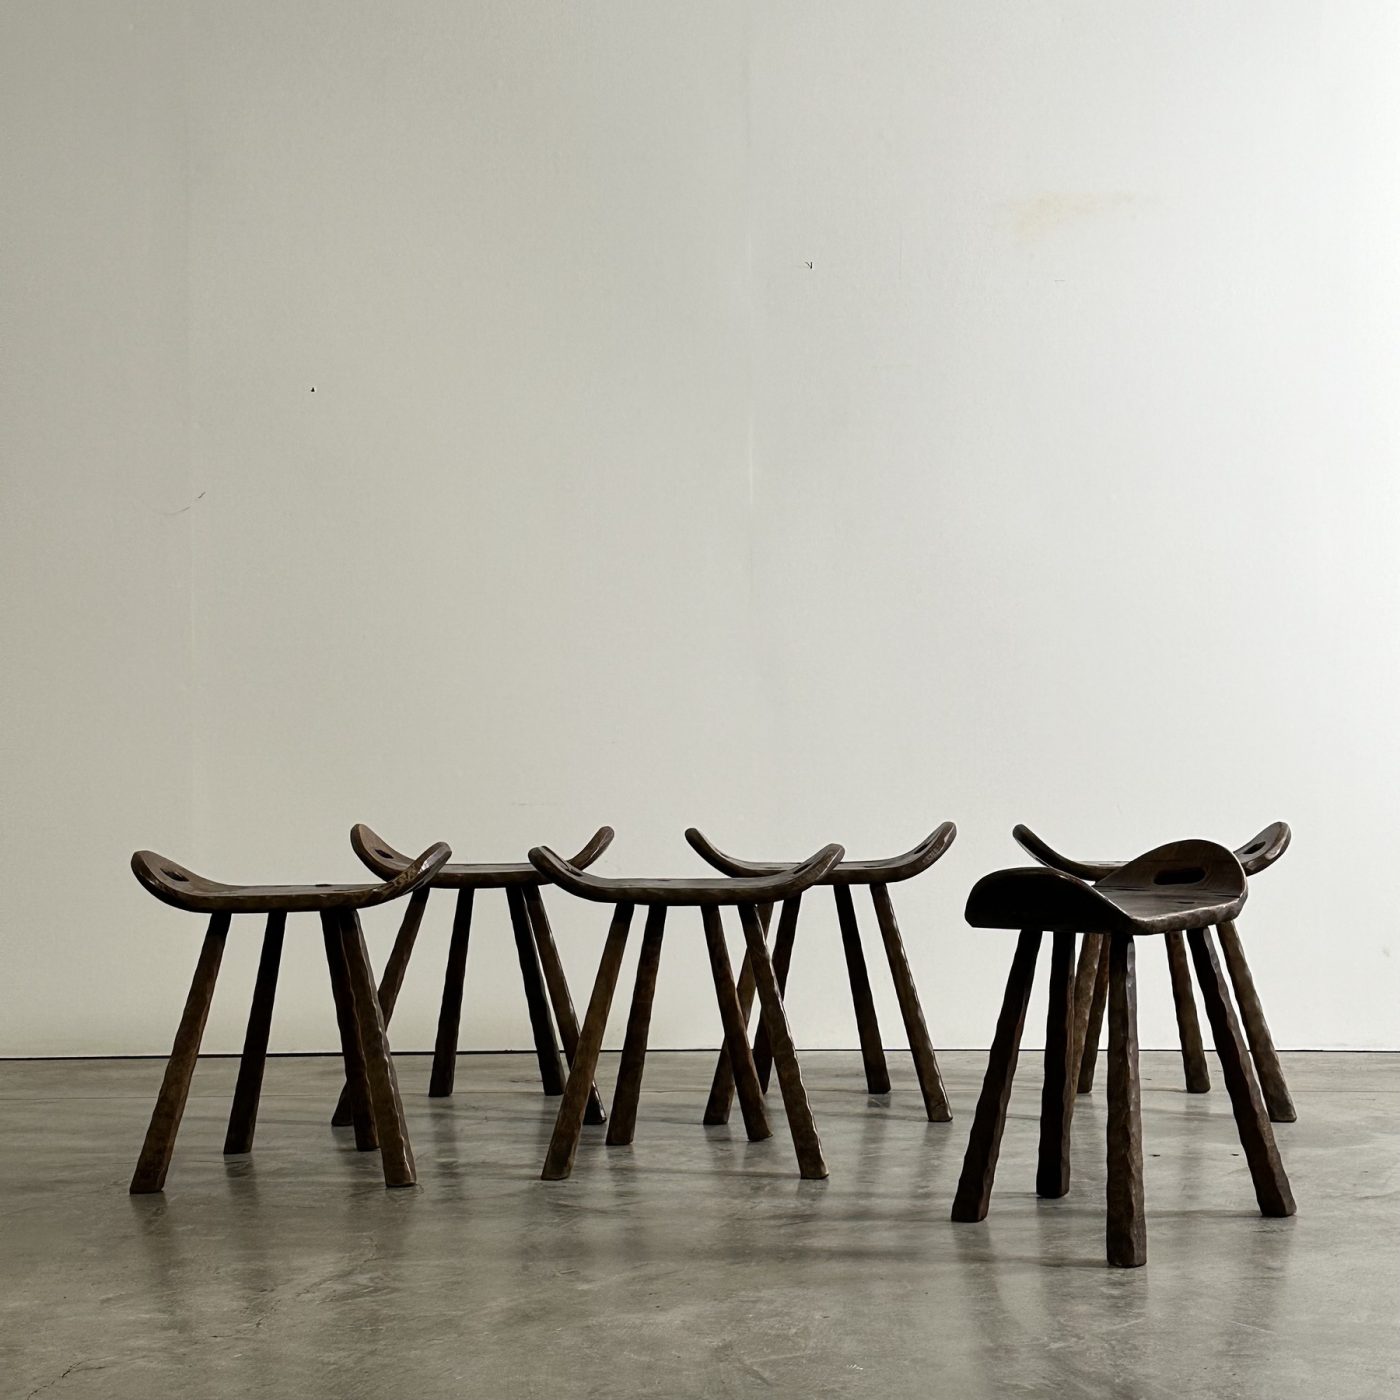 objet-vagabond-wooden-stools0002